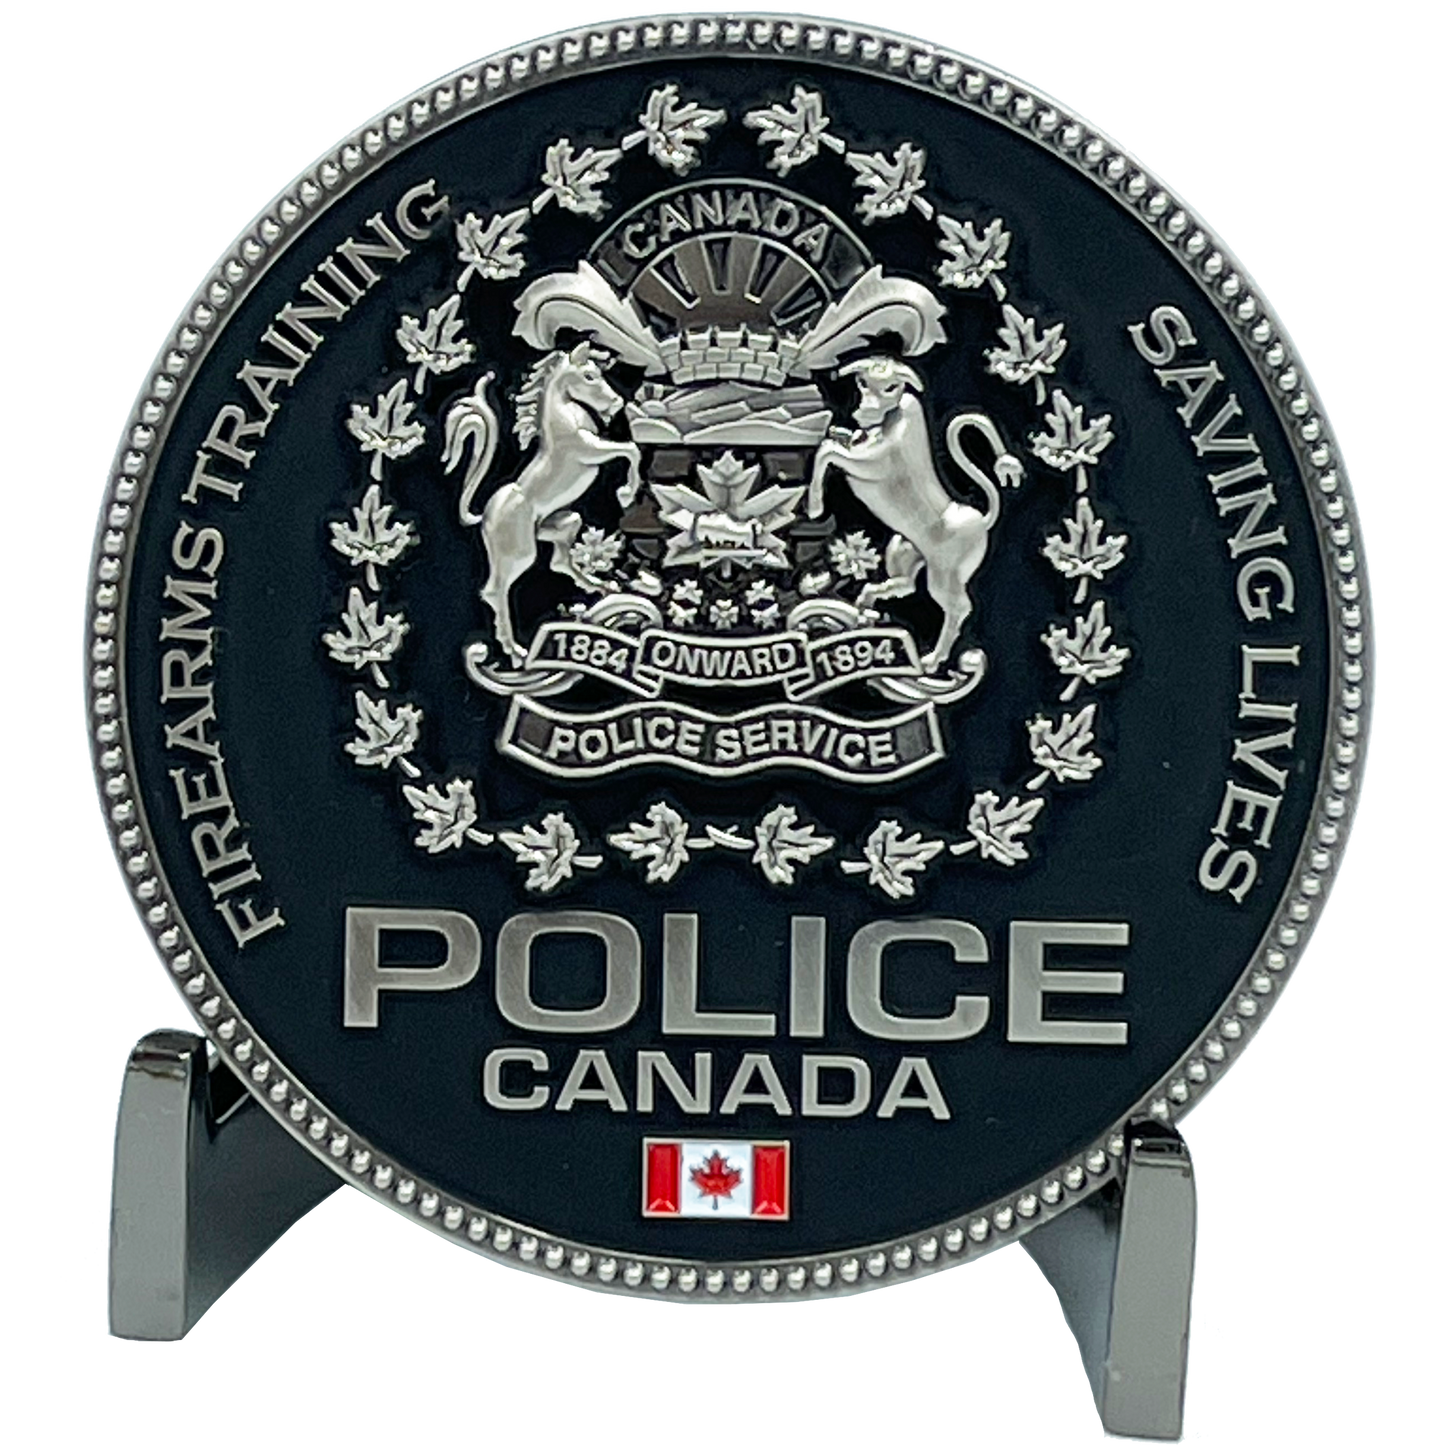 EL6-003 Canada Police Service Calgary Vancouver M4 Shotgun Pistol Toronto Firearms Instructor Challenge Coin